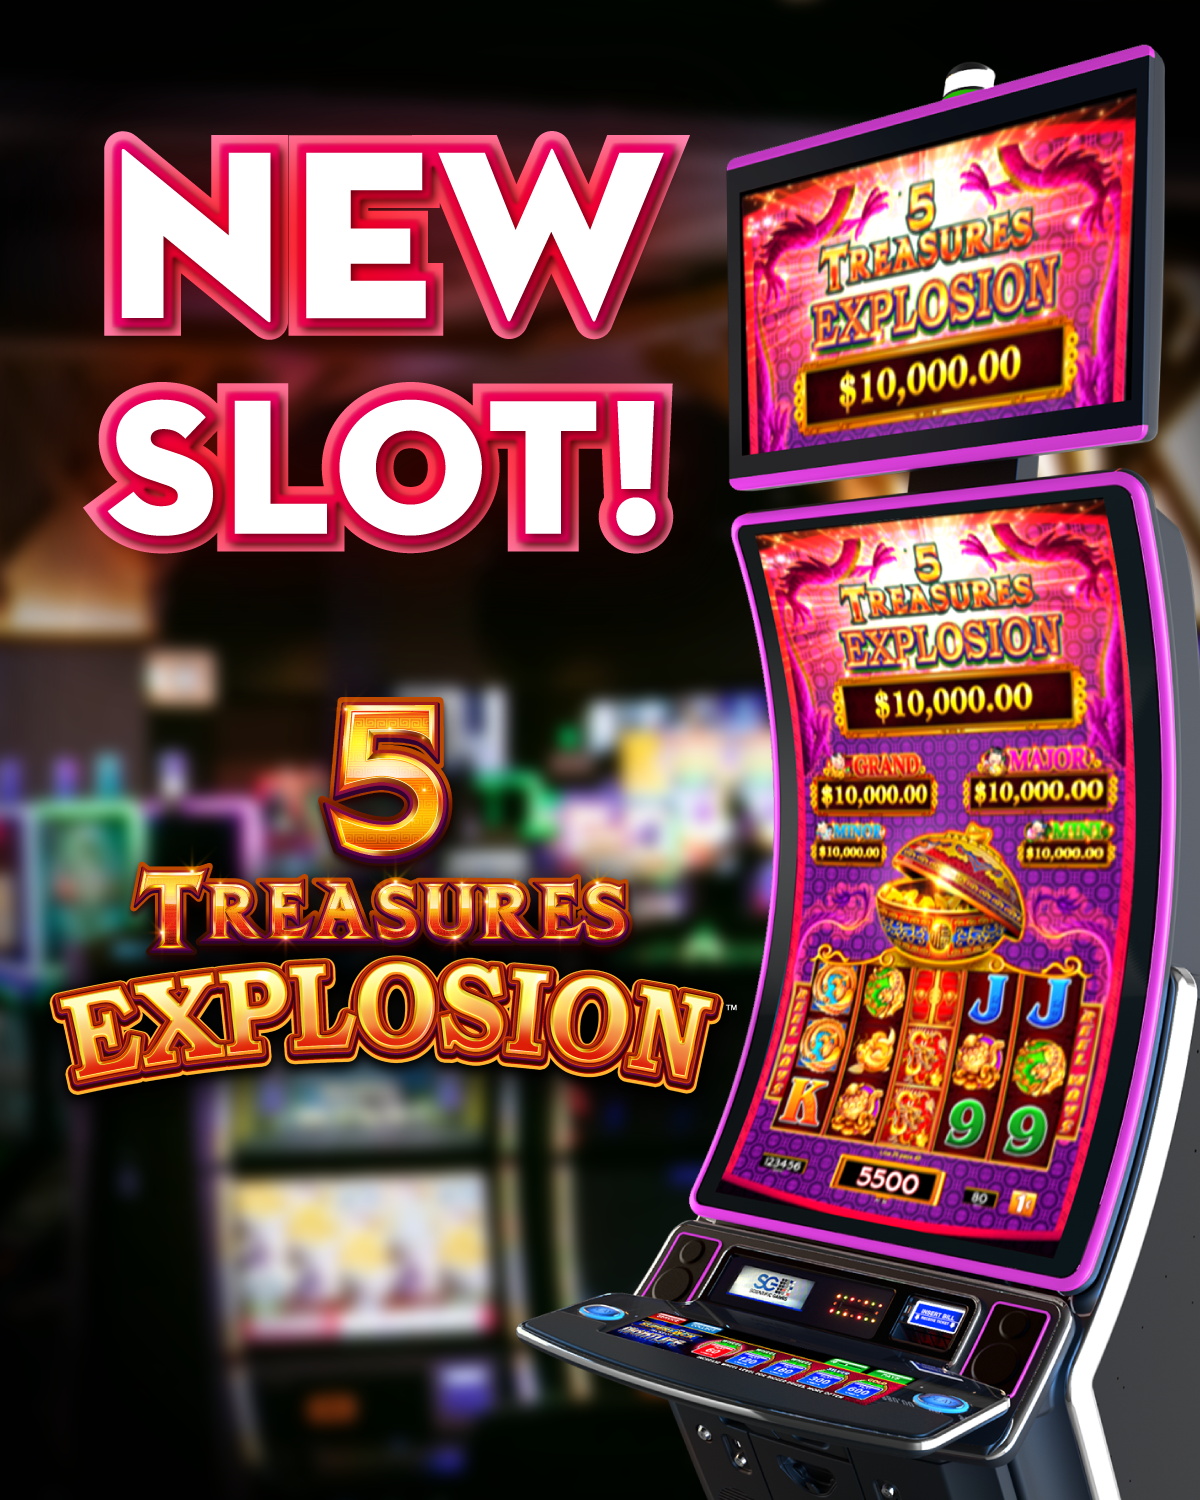 5 Treasures Explosion